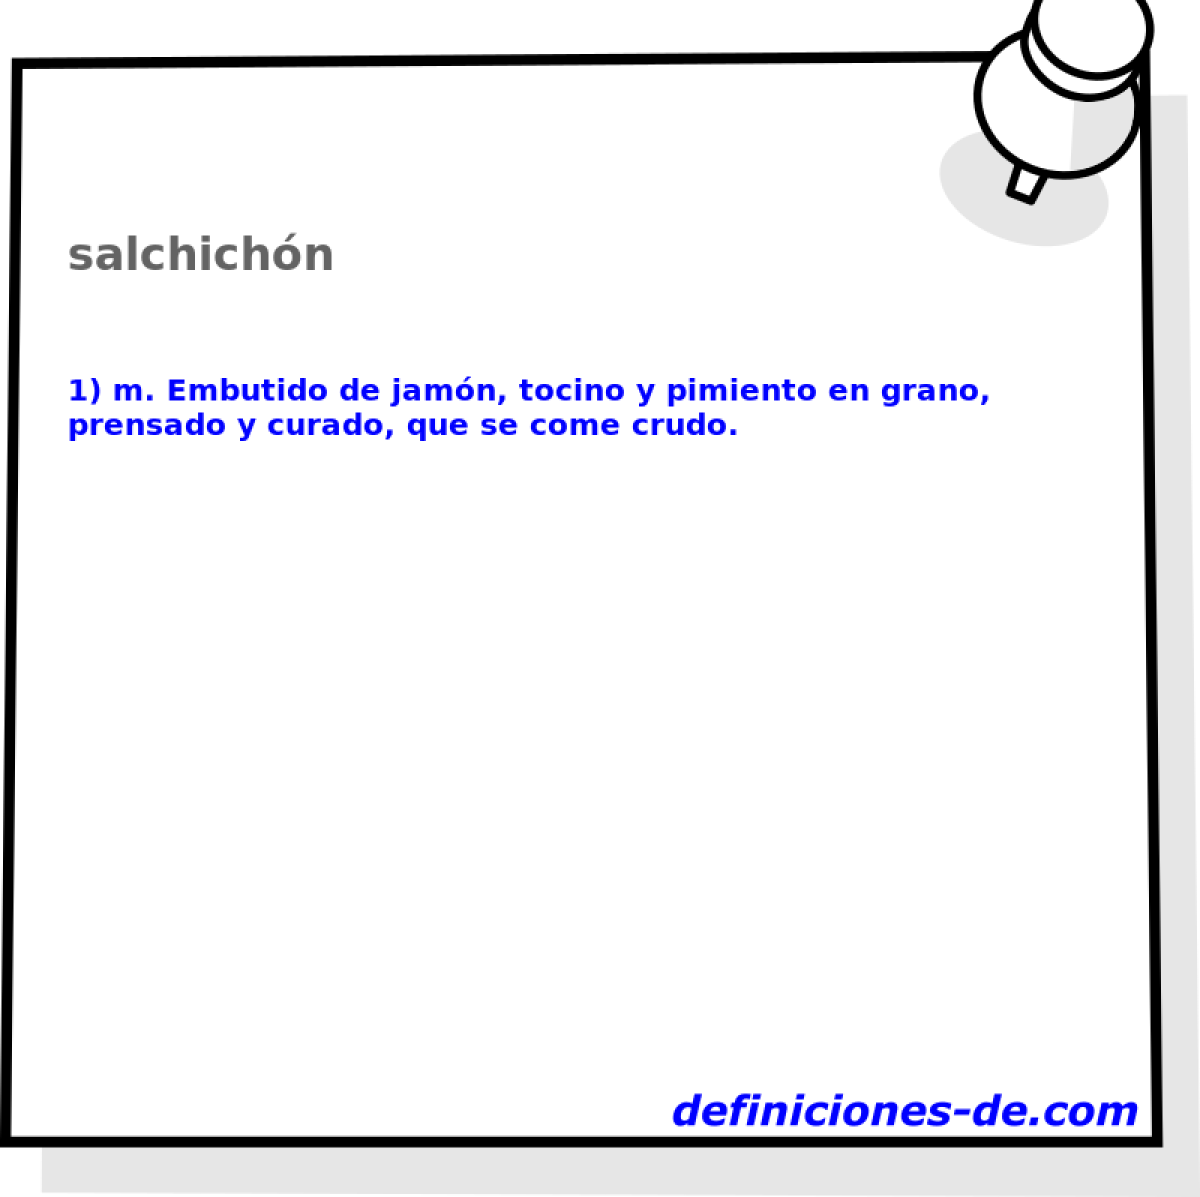 salchichn 